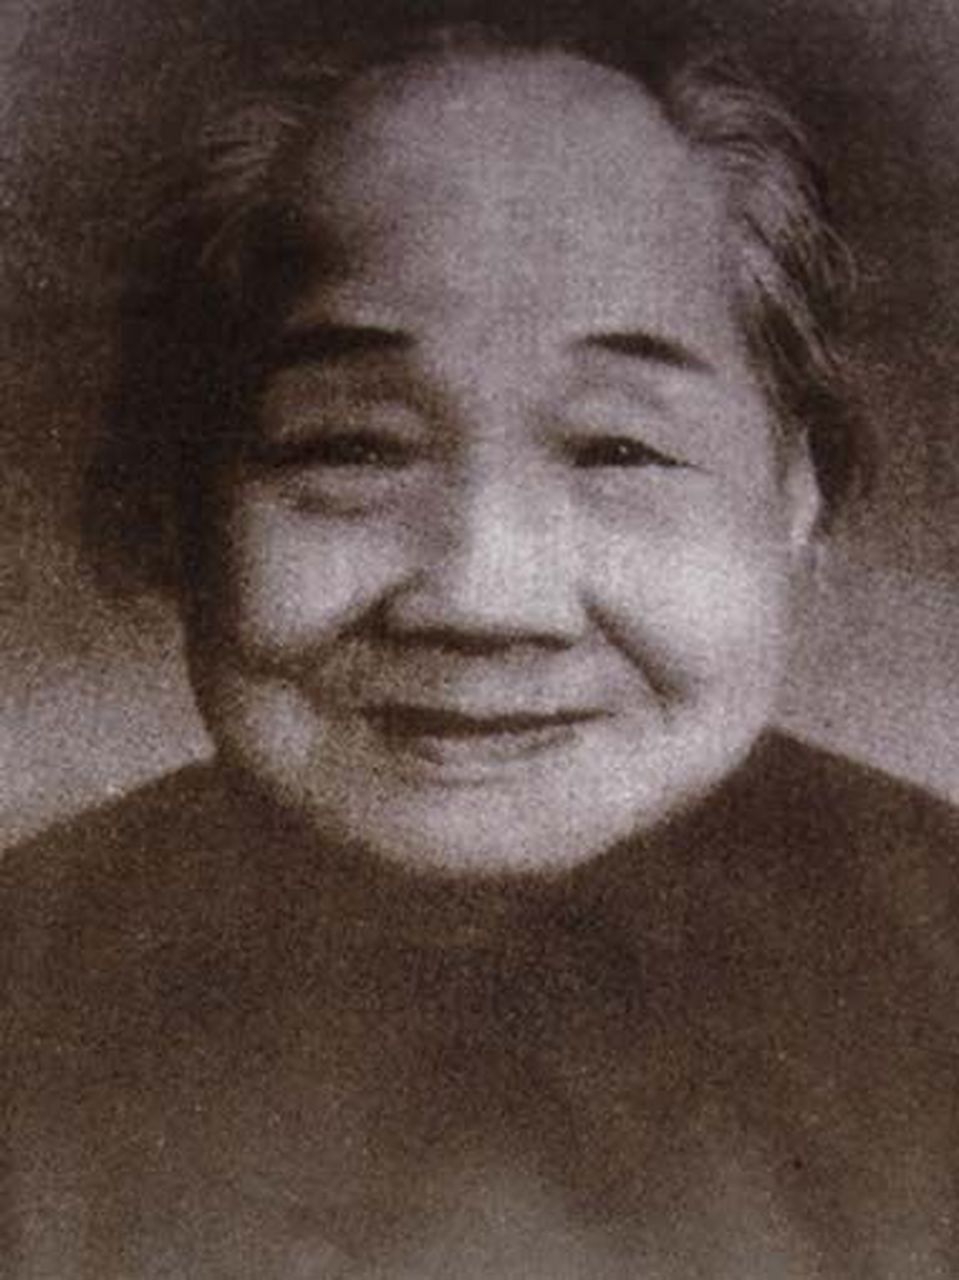 向振熙:杨开慧的母亲,1962年离开人世,享年92岁 向振熙,是杨昌济妻子,